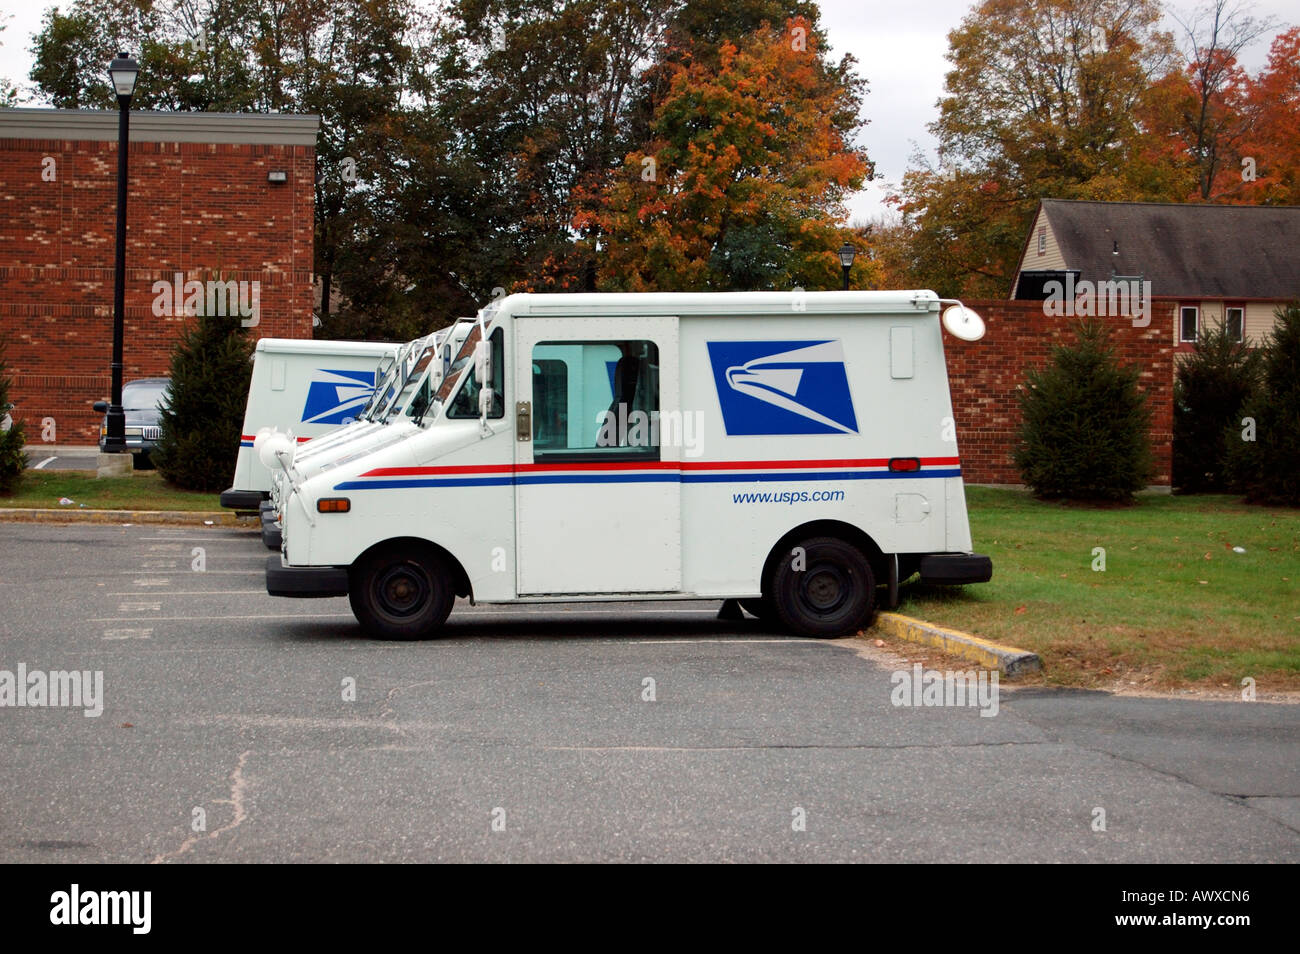 Rangée de garé United States Postal Service véhicules de livraison Banque D'Images